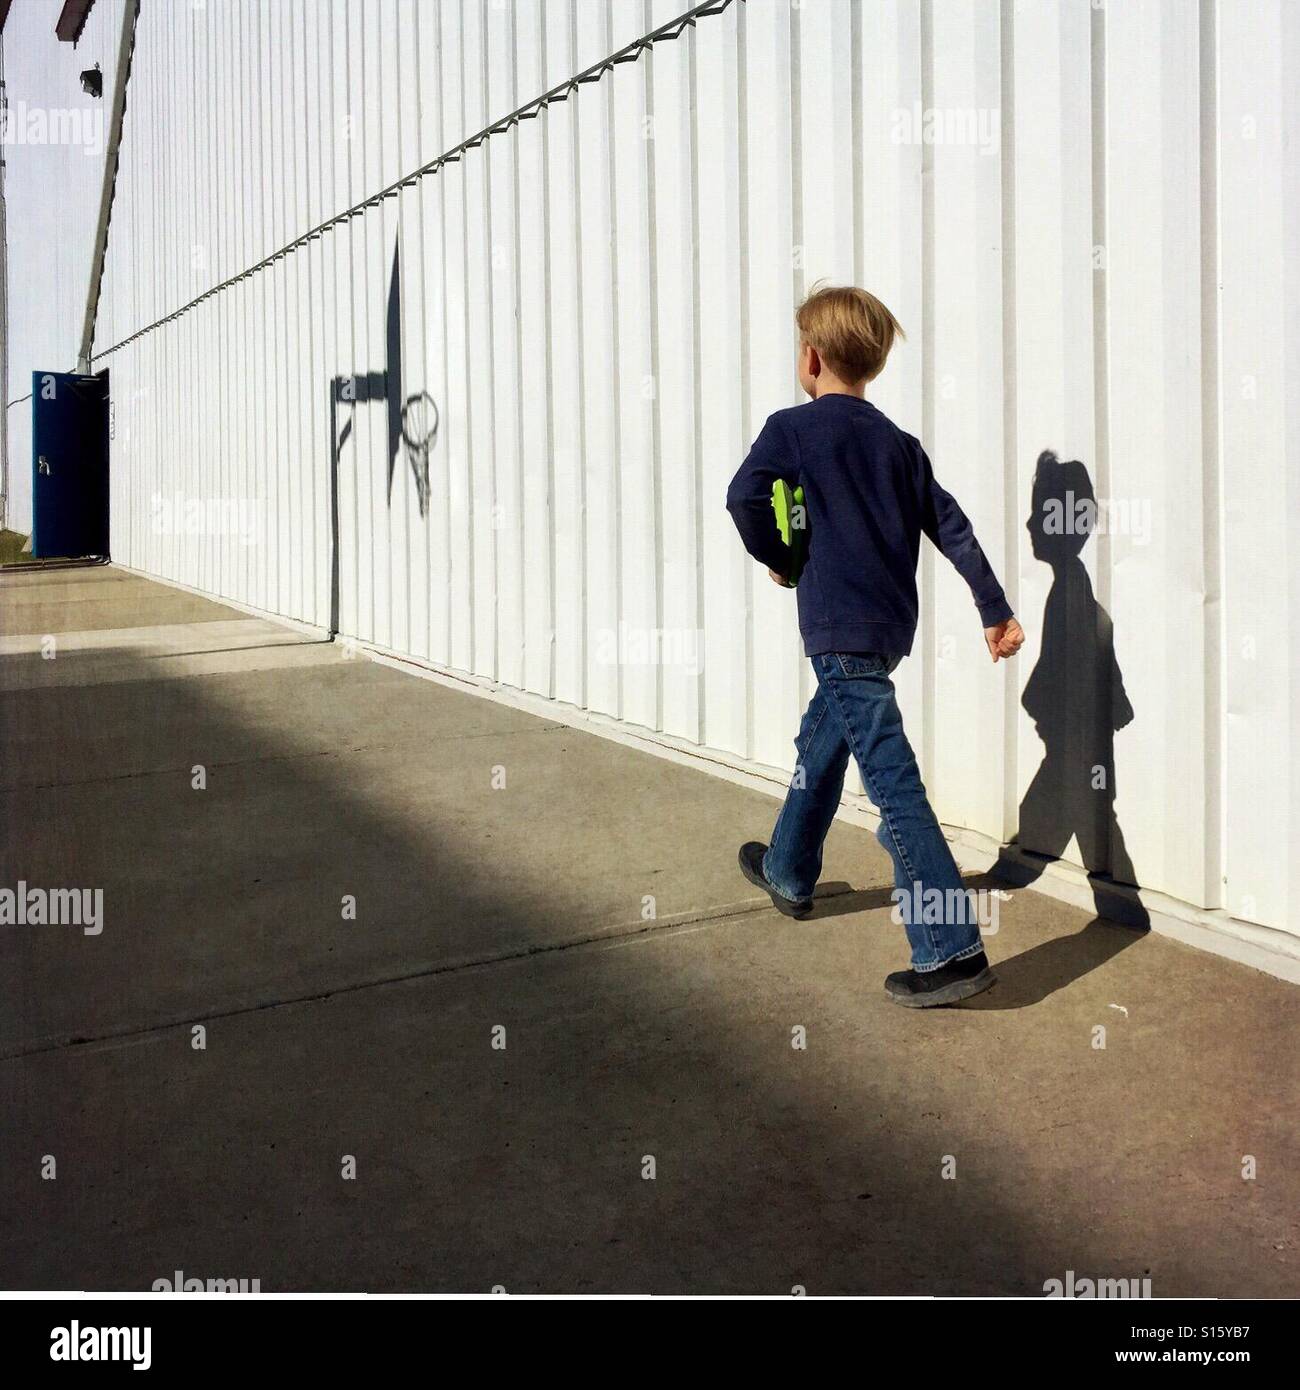 Ein Junge mit seinem Tablet unter dem Arm geht munter neben einem Geschäftshaus in Richtung einer offenen Tür. Stockfoto